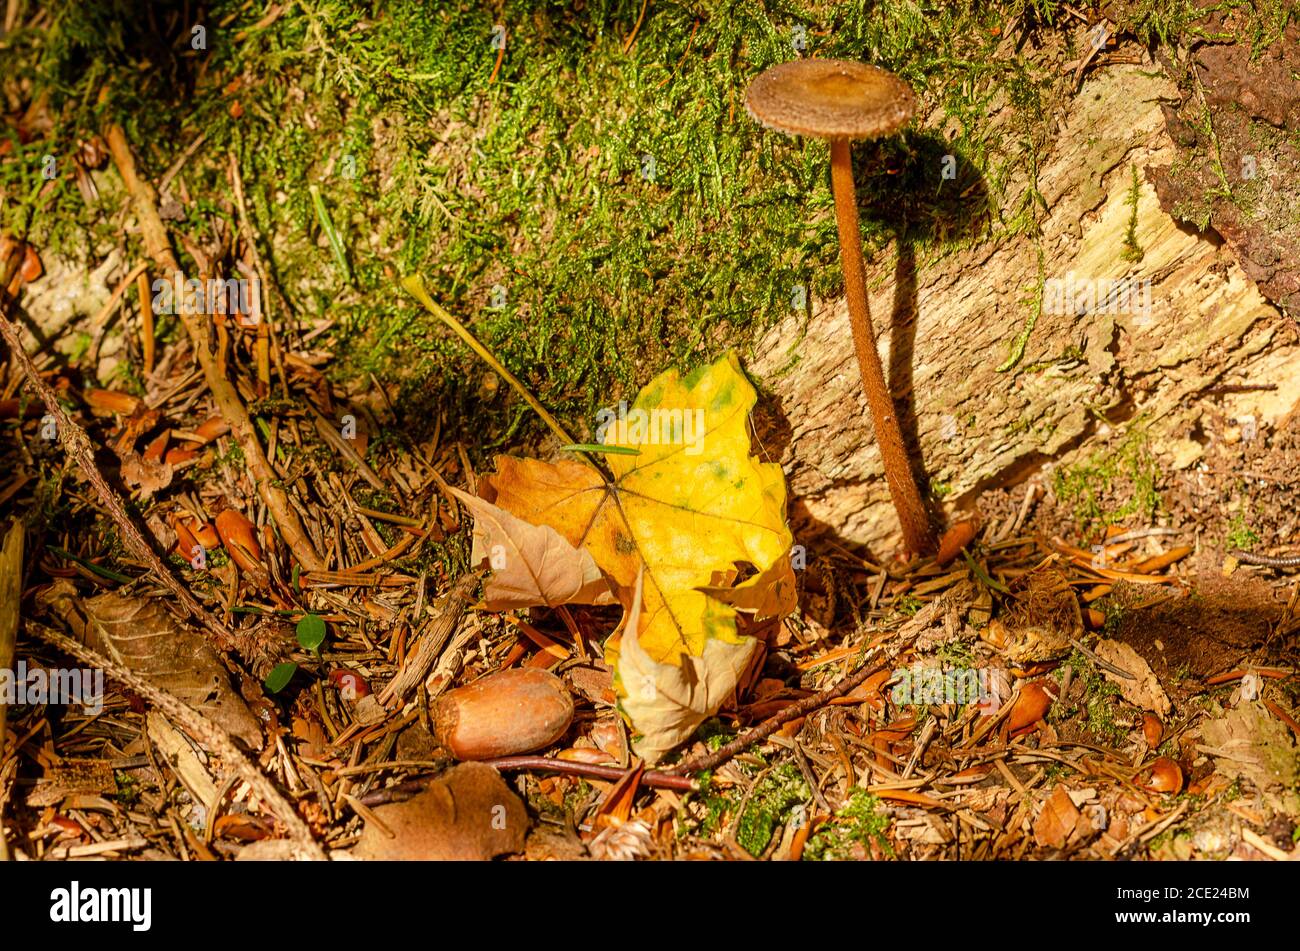 Pavimento forestale in autunno. Primo piano di detriti legnosi grossolani, con un fungo, una foglia appassita, muschio verde, un acorno, con aghi di abete rosso marrone ecc. Foto Stock